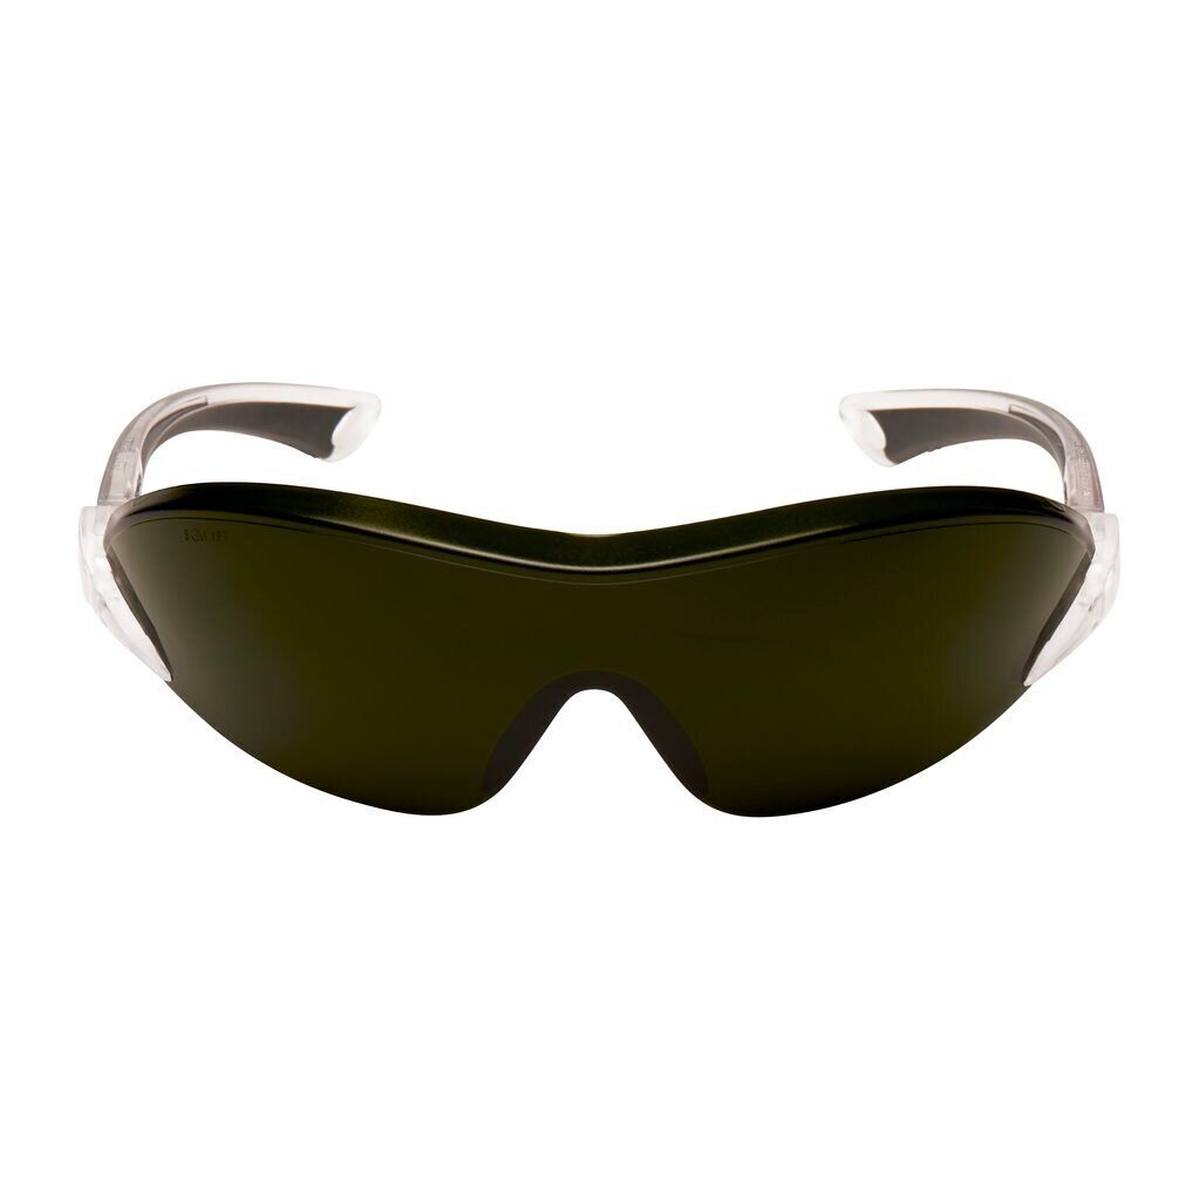 3M 2845 Gafas de protección AS/AF/UV, PC, tintadas en verde, patillas ajustables en longitud e inclinación, patillas blandas, IR 5.0 - aptas para oxicorte y soldadura fuerte